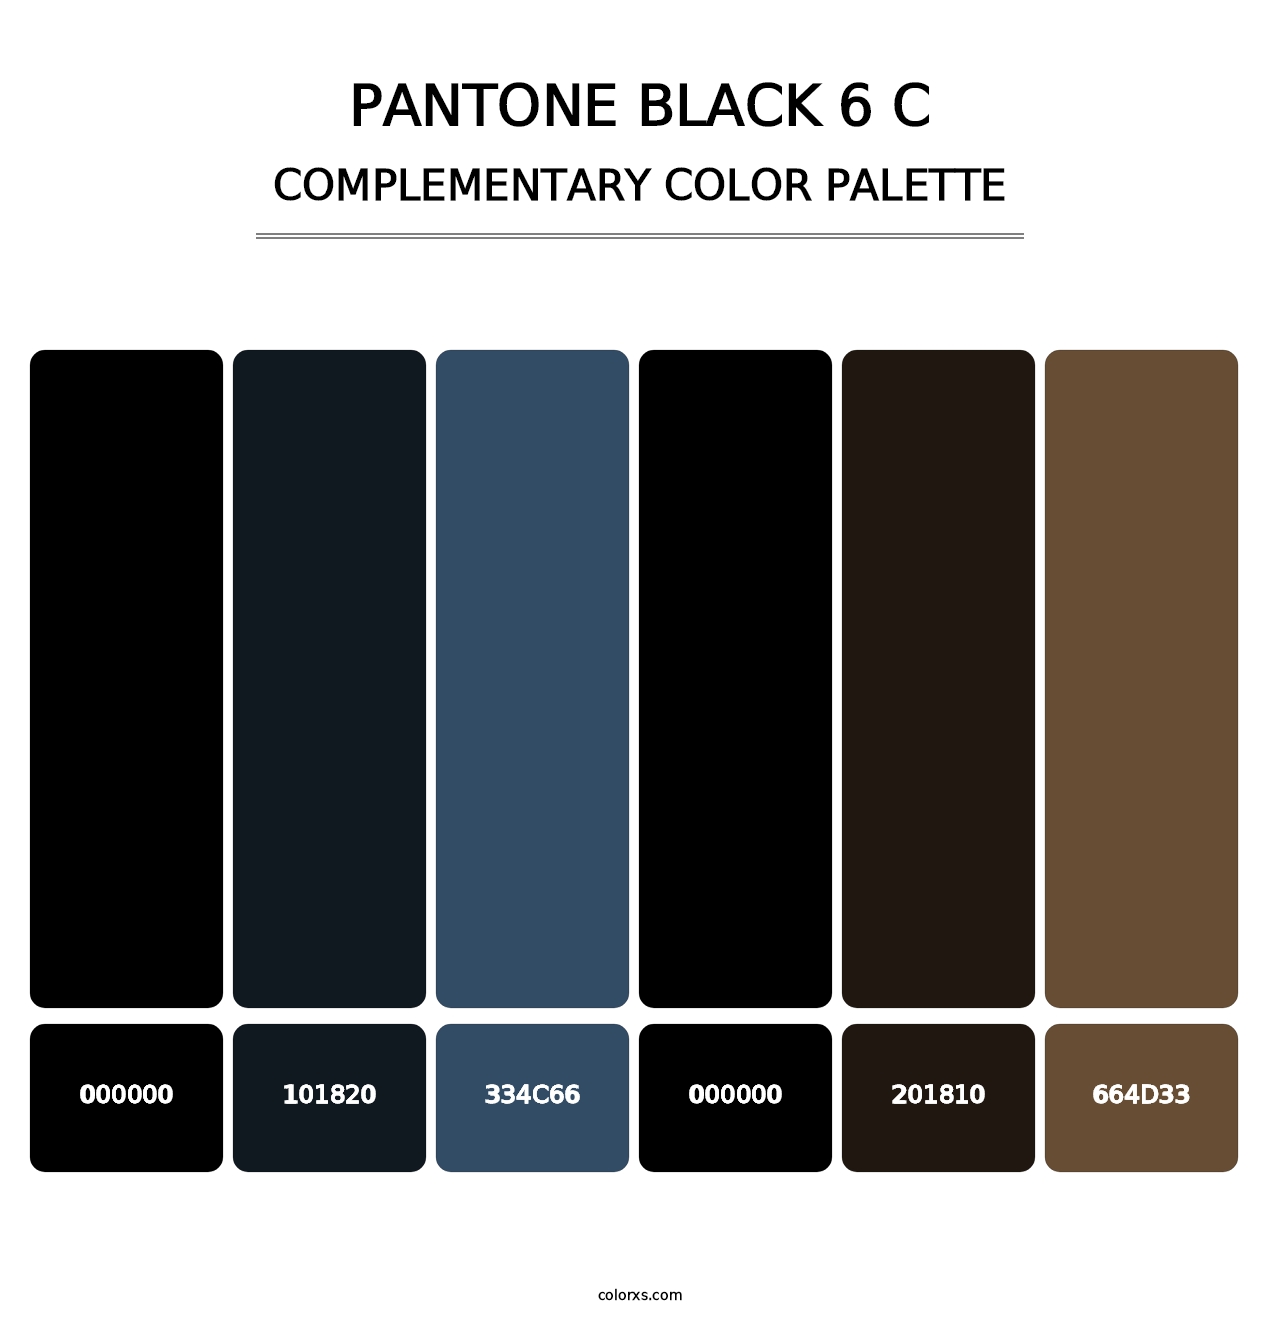 PANTONE Black 6 C - Complementary Color Palette